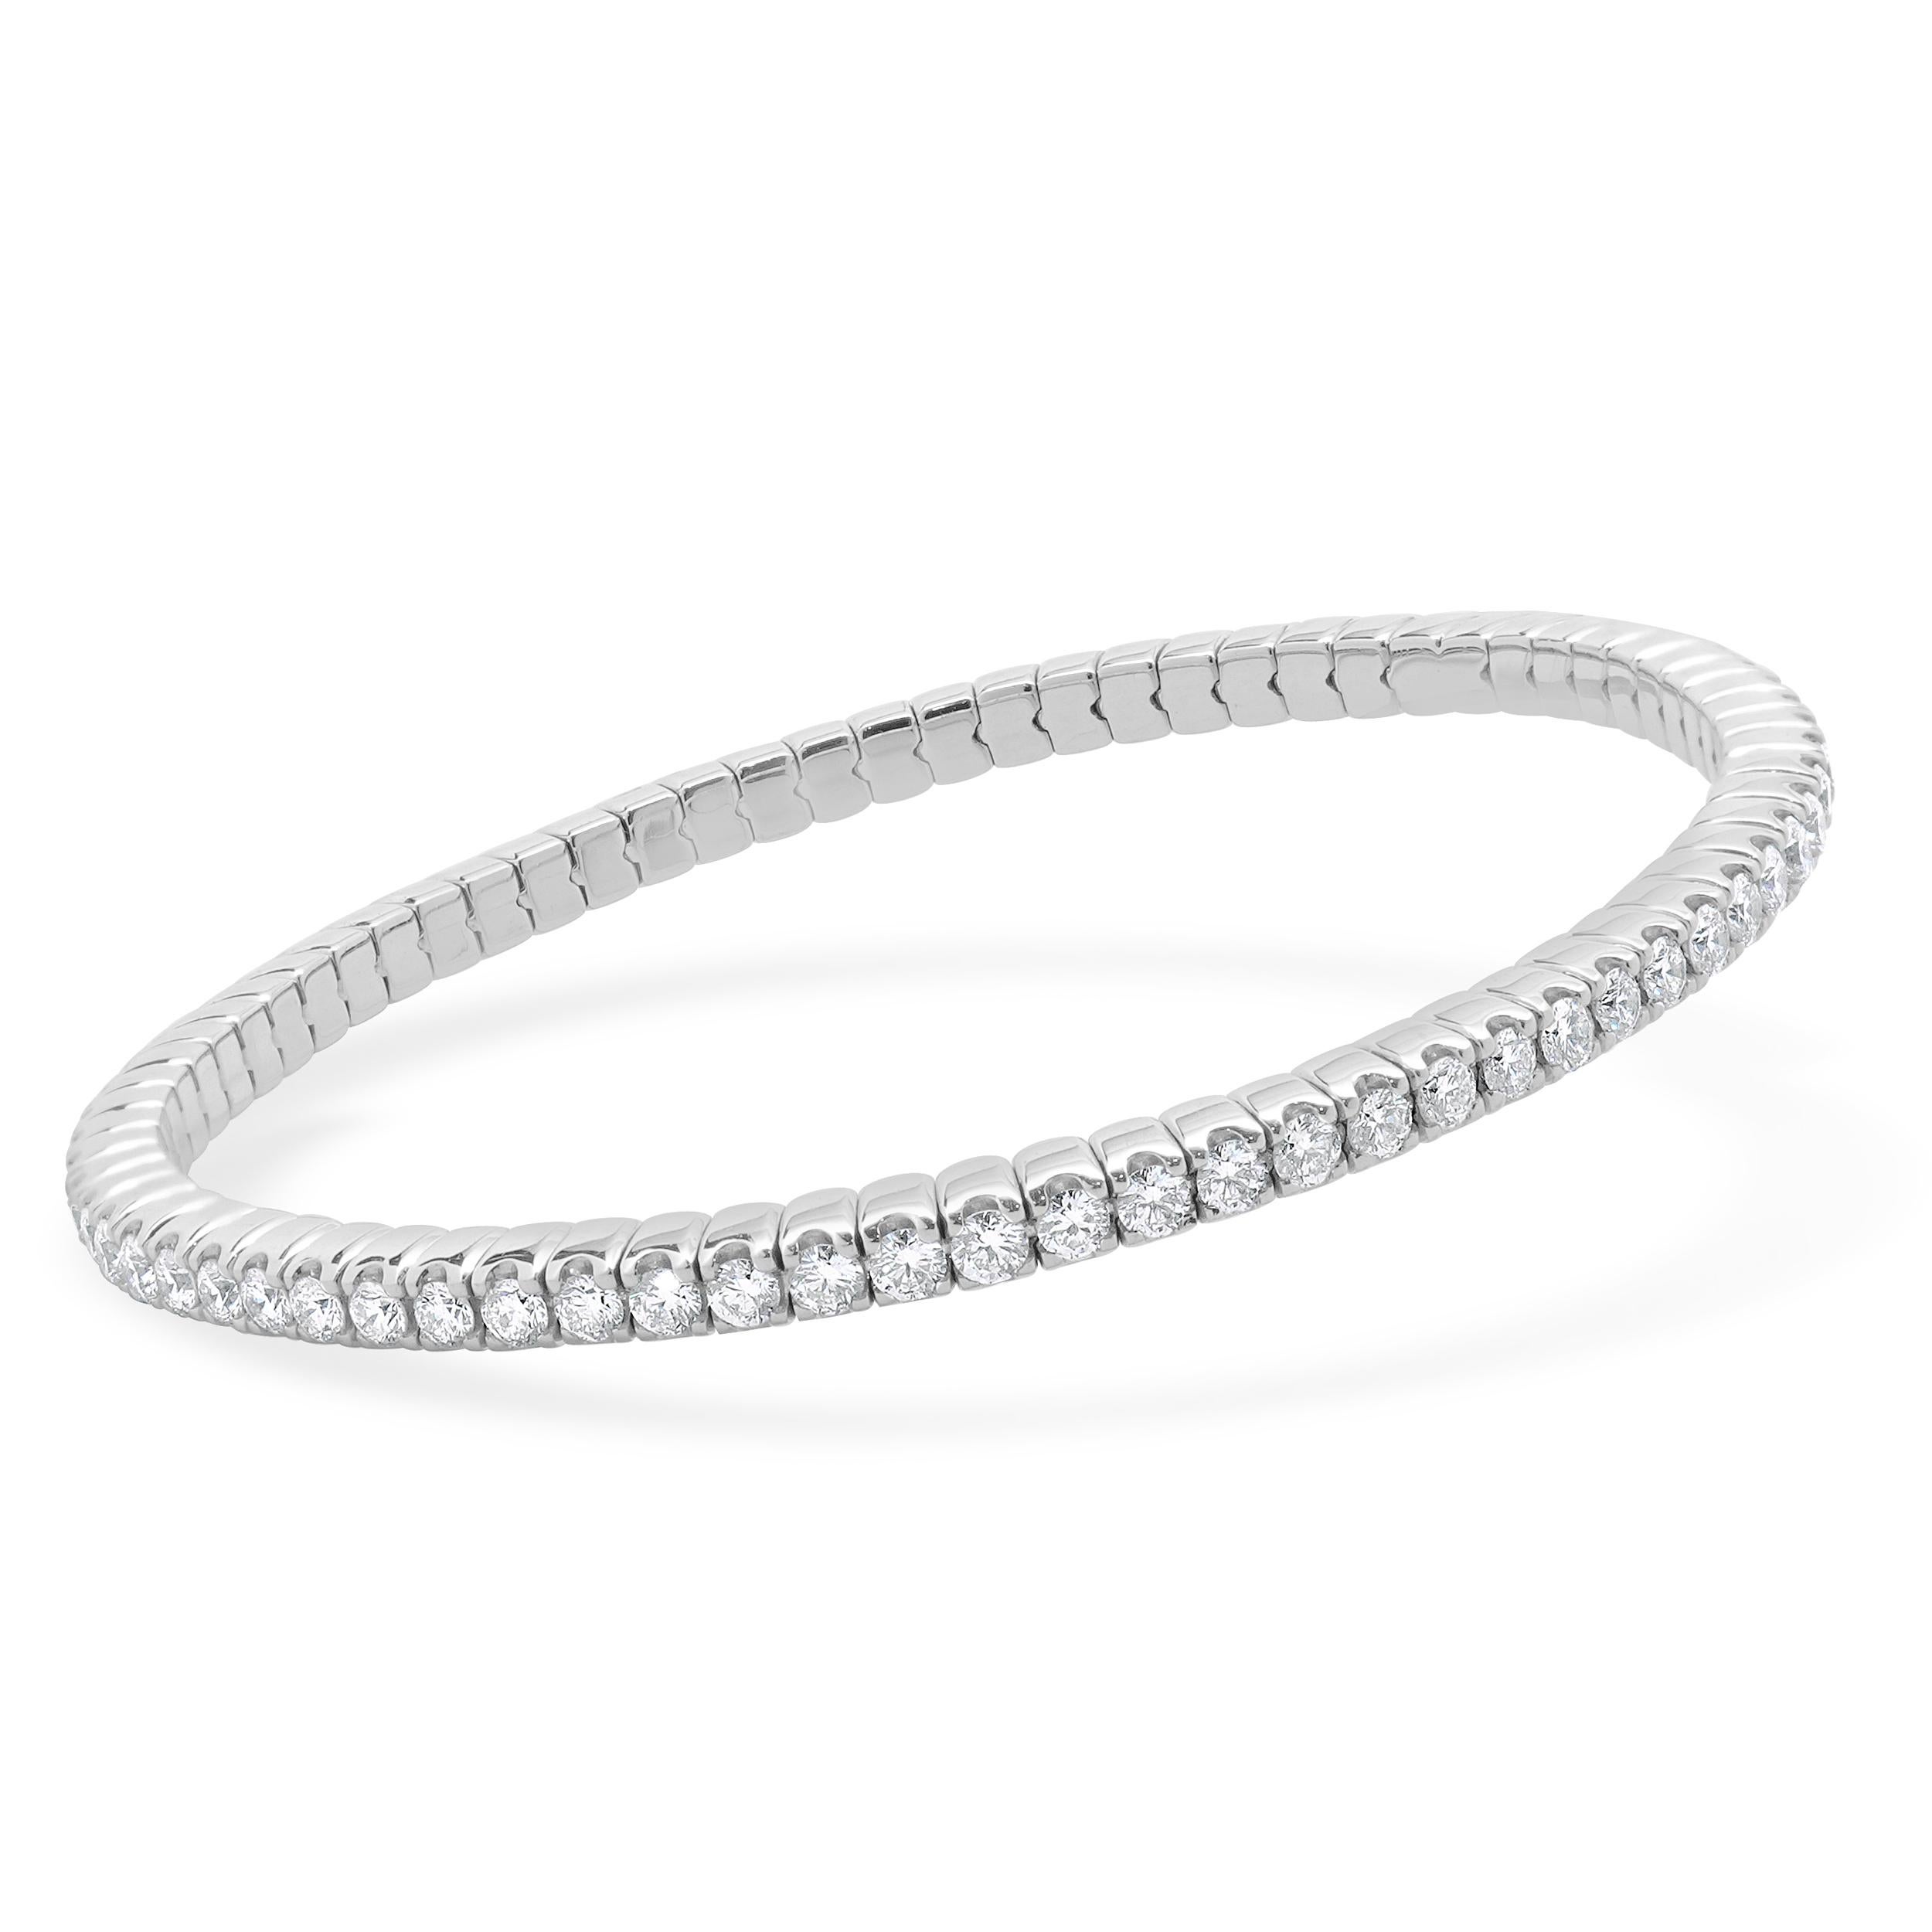 Designer : Crivelli
Matériau : Or blanc 18K
Diamant : 73 diamants ronds de taille brillant = 3.00cttw
Couleur : H
Clarté : SI1
Poids : 14,21 grammes
